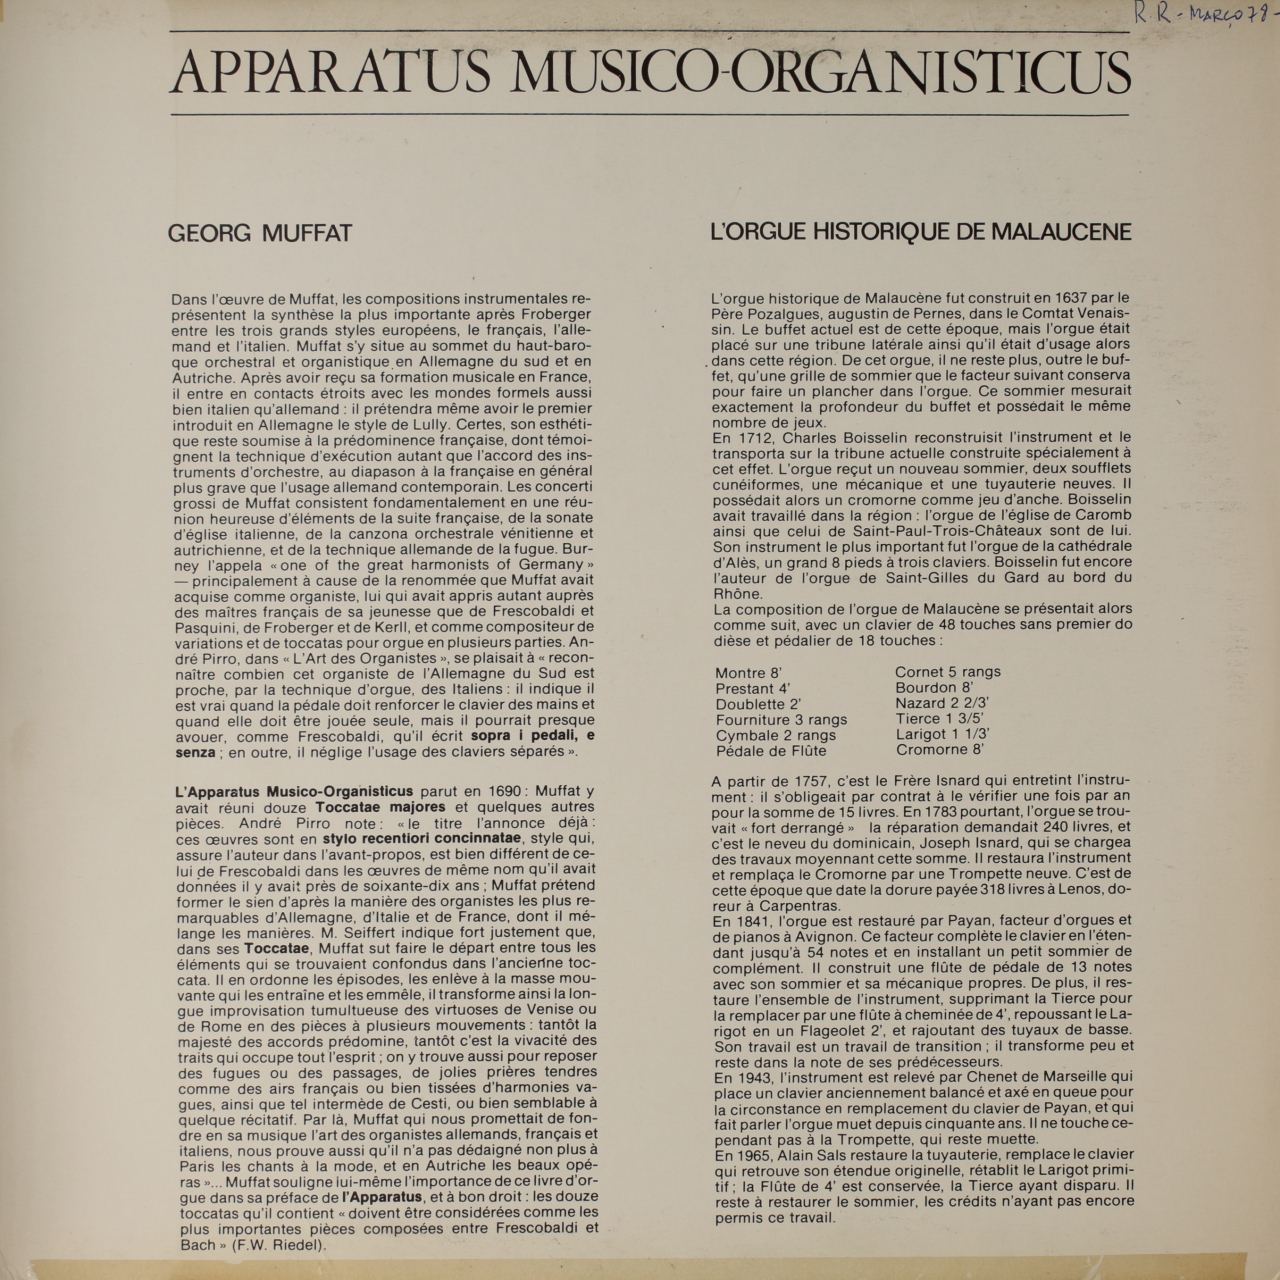 Muffat: Apparatus musico-organisticus